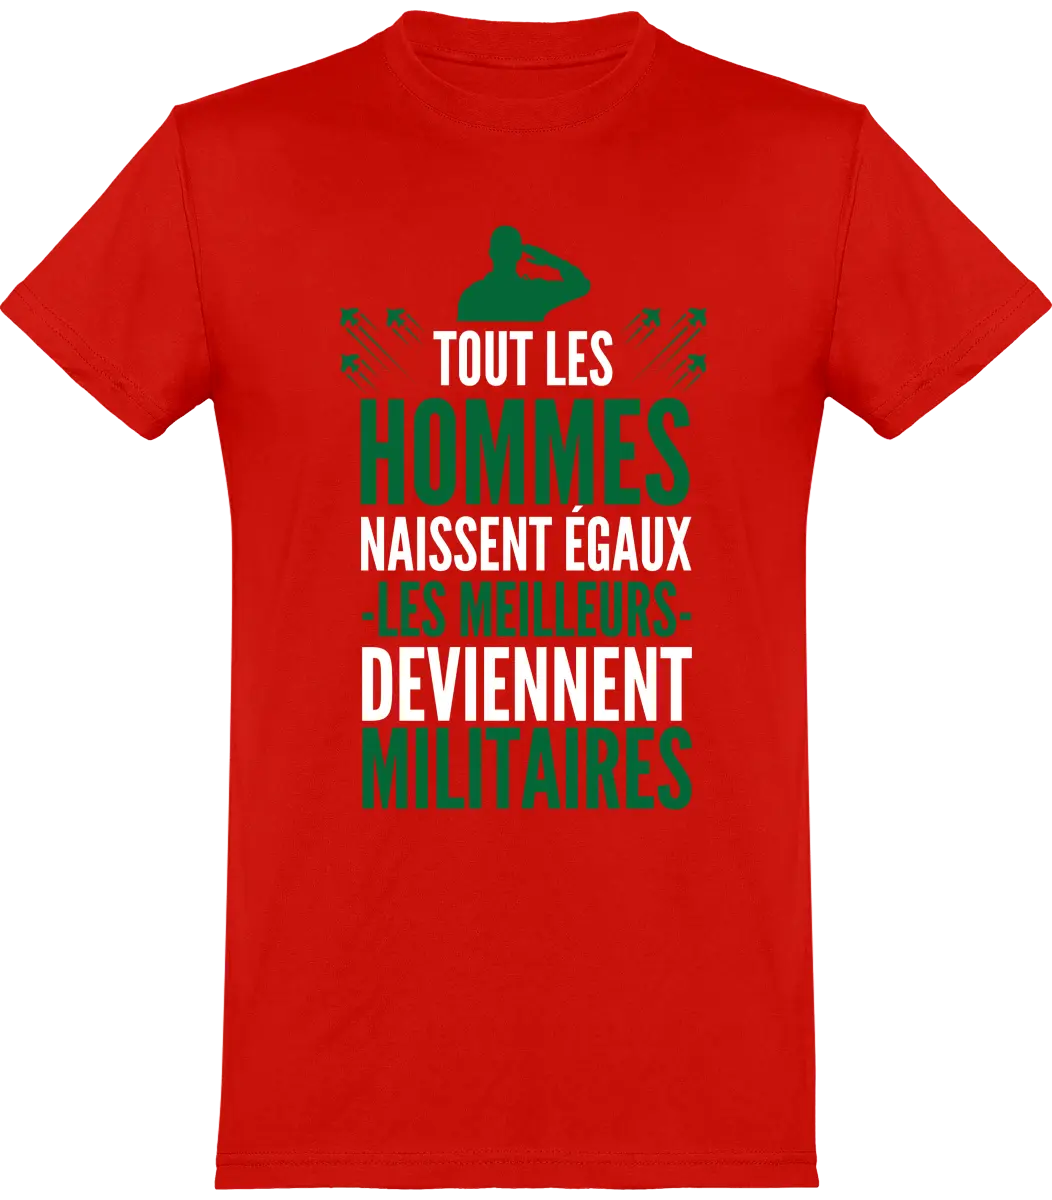 T-shirt Militaire "Tout les hommes naissent égaux les meilleurs deviennent militaires" | Mixte - French Humour